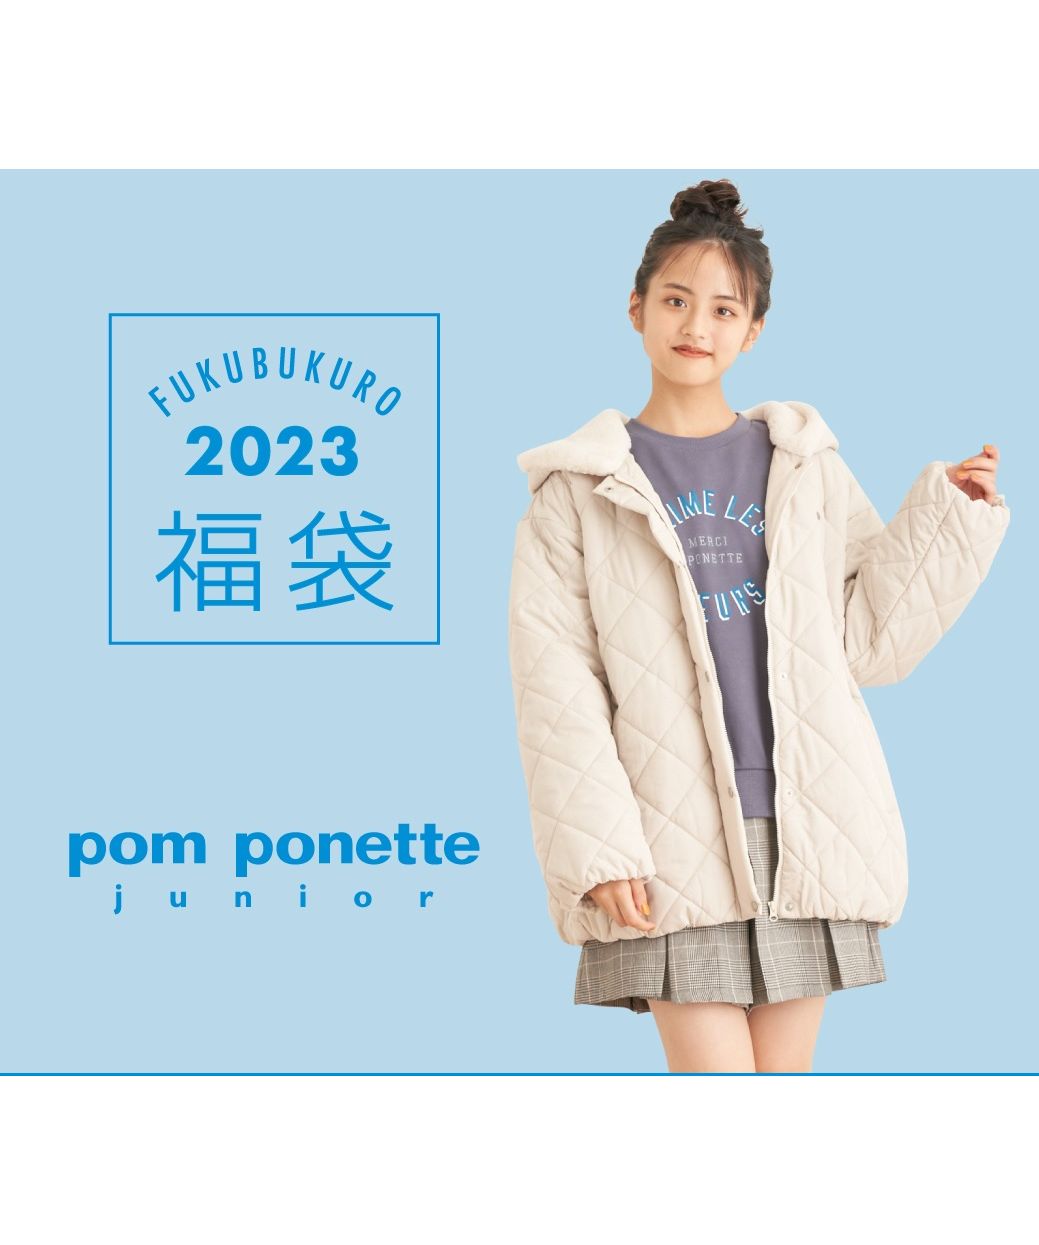 2023年福袋 pom ponette juniorポンポネットジュニア160その他